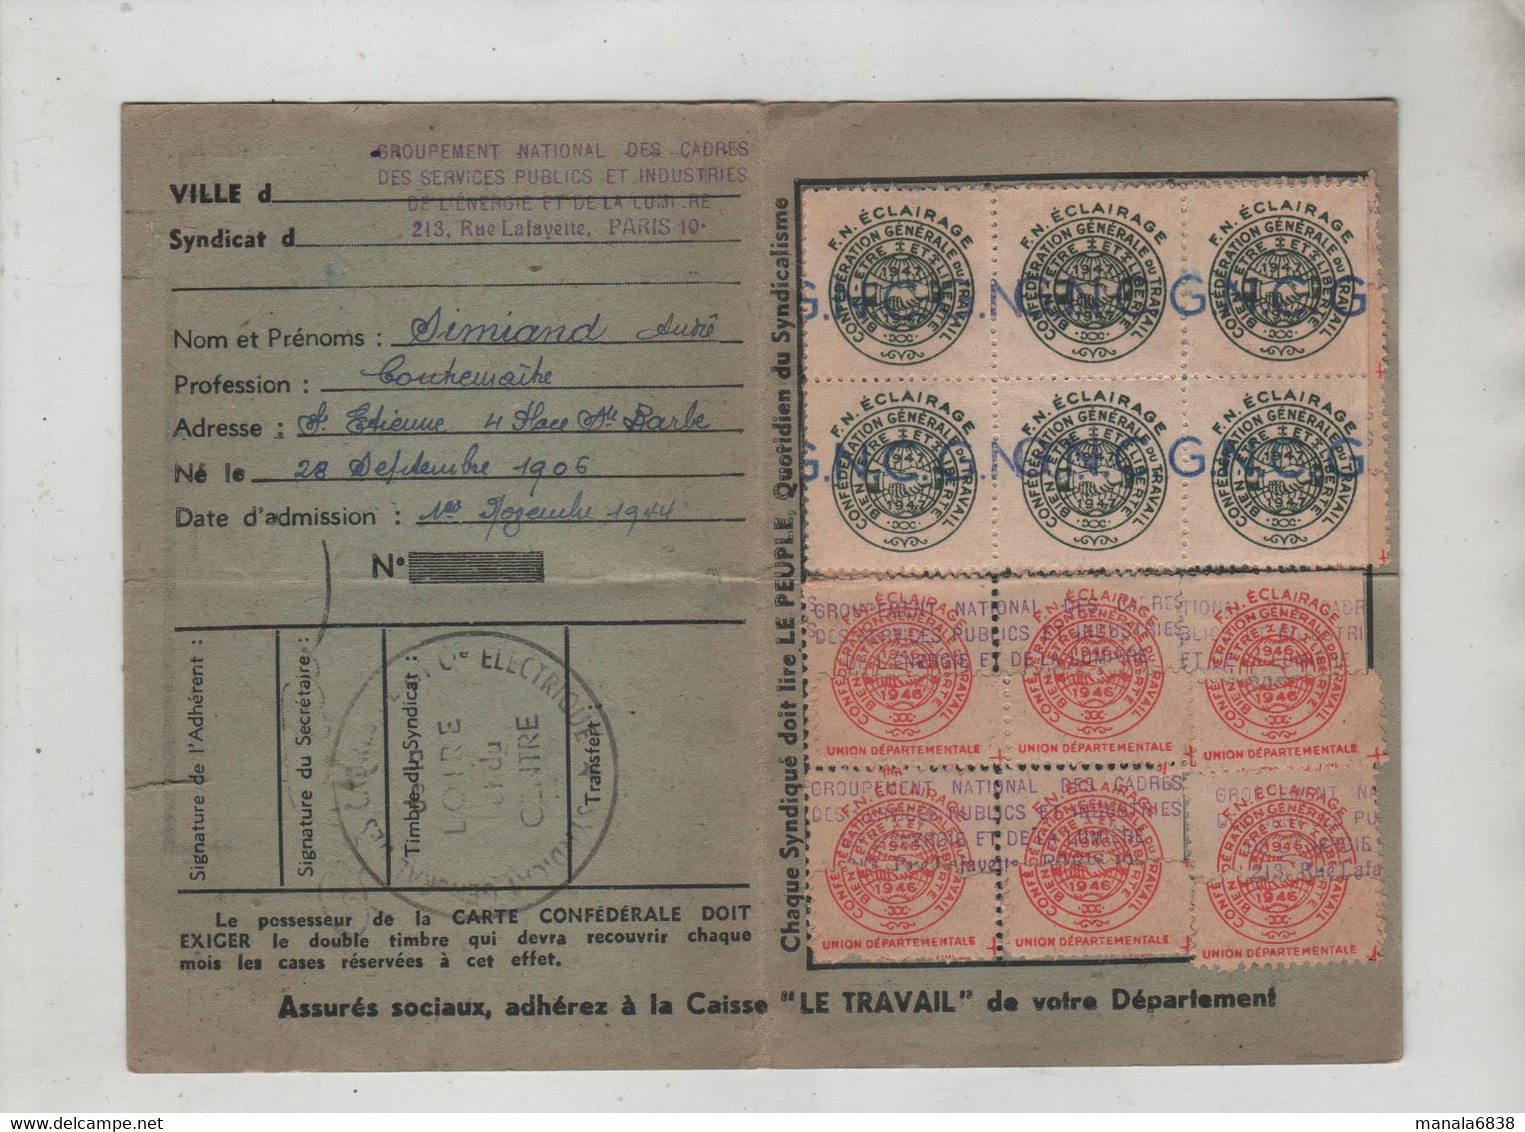 Carte Confédérale 1946 CGT Simiand Saint Etienne - Tessere Associative